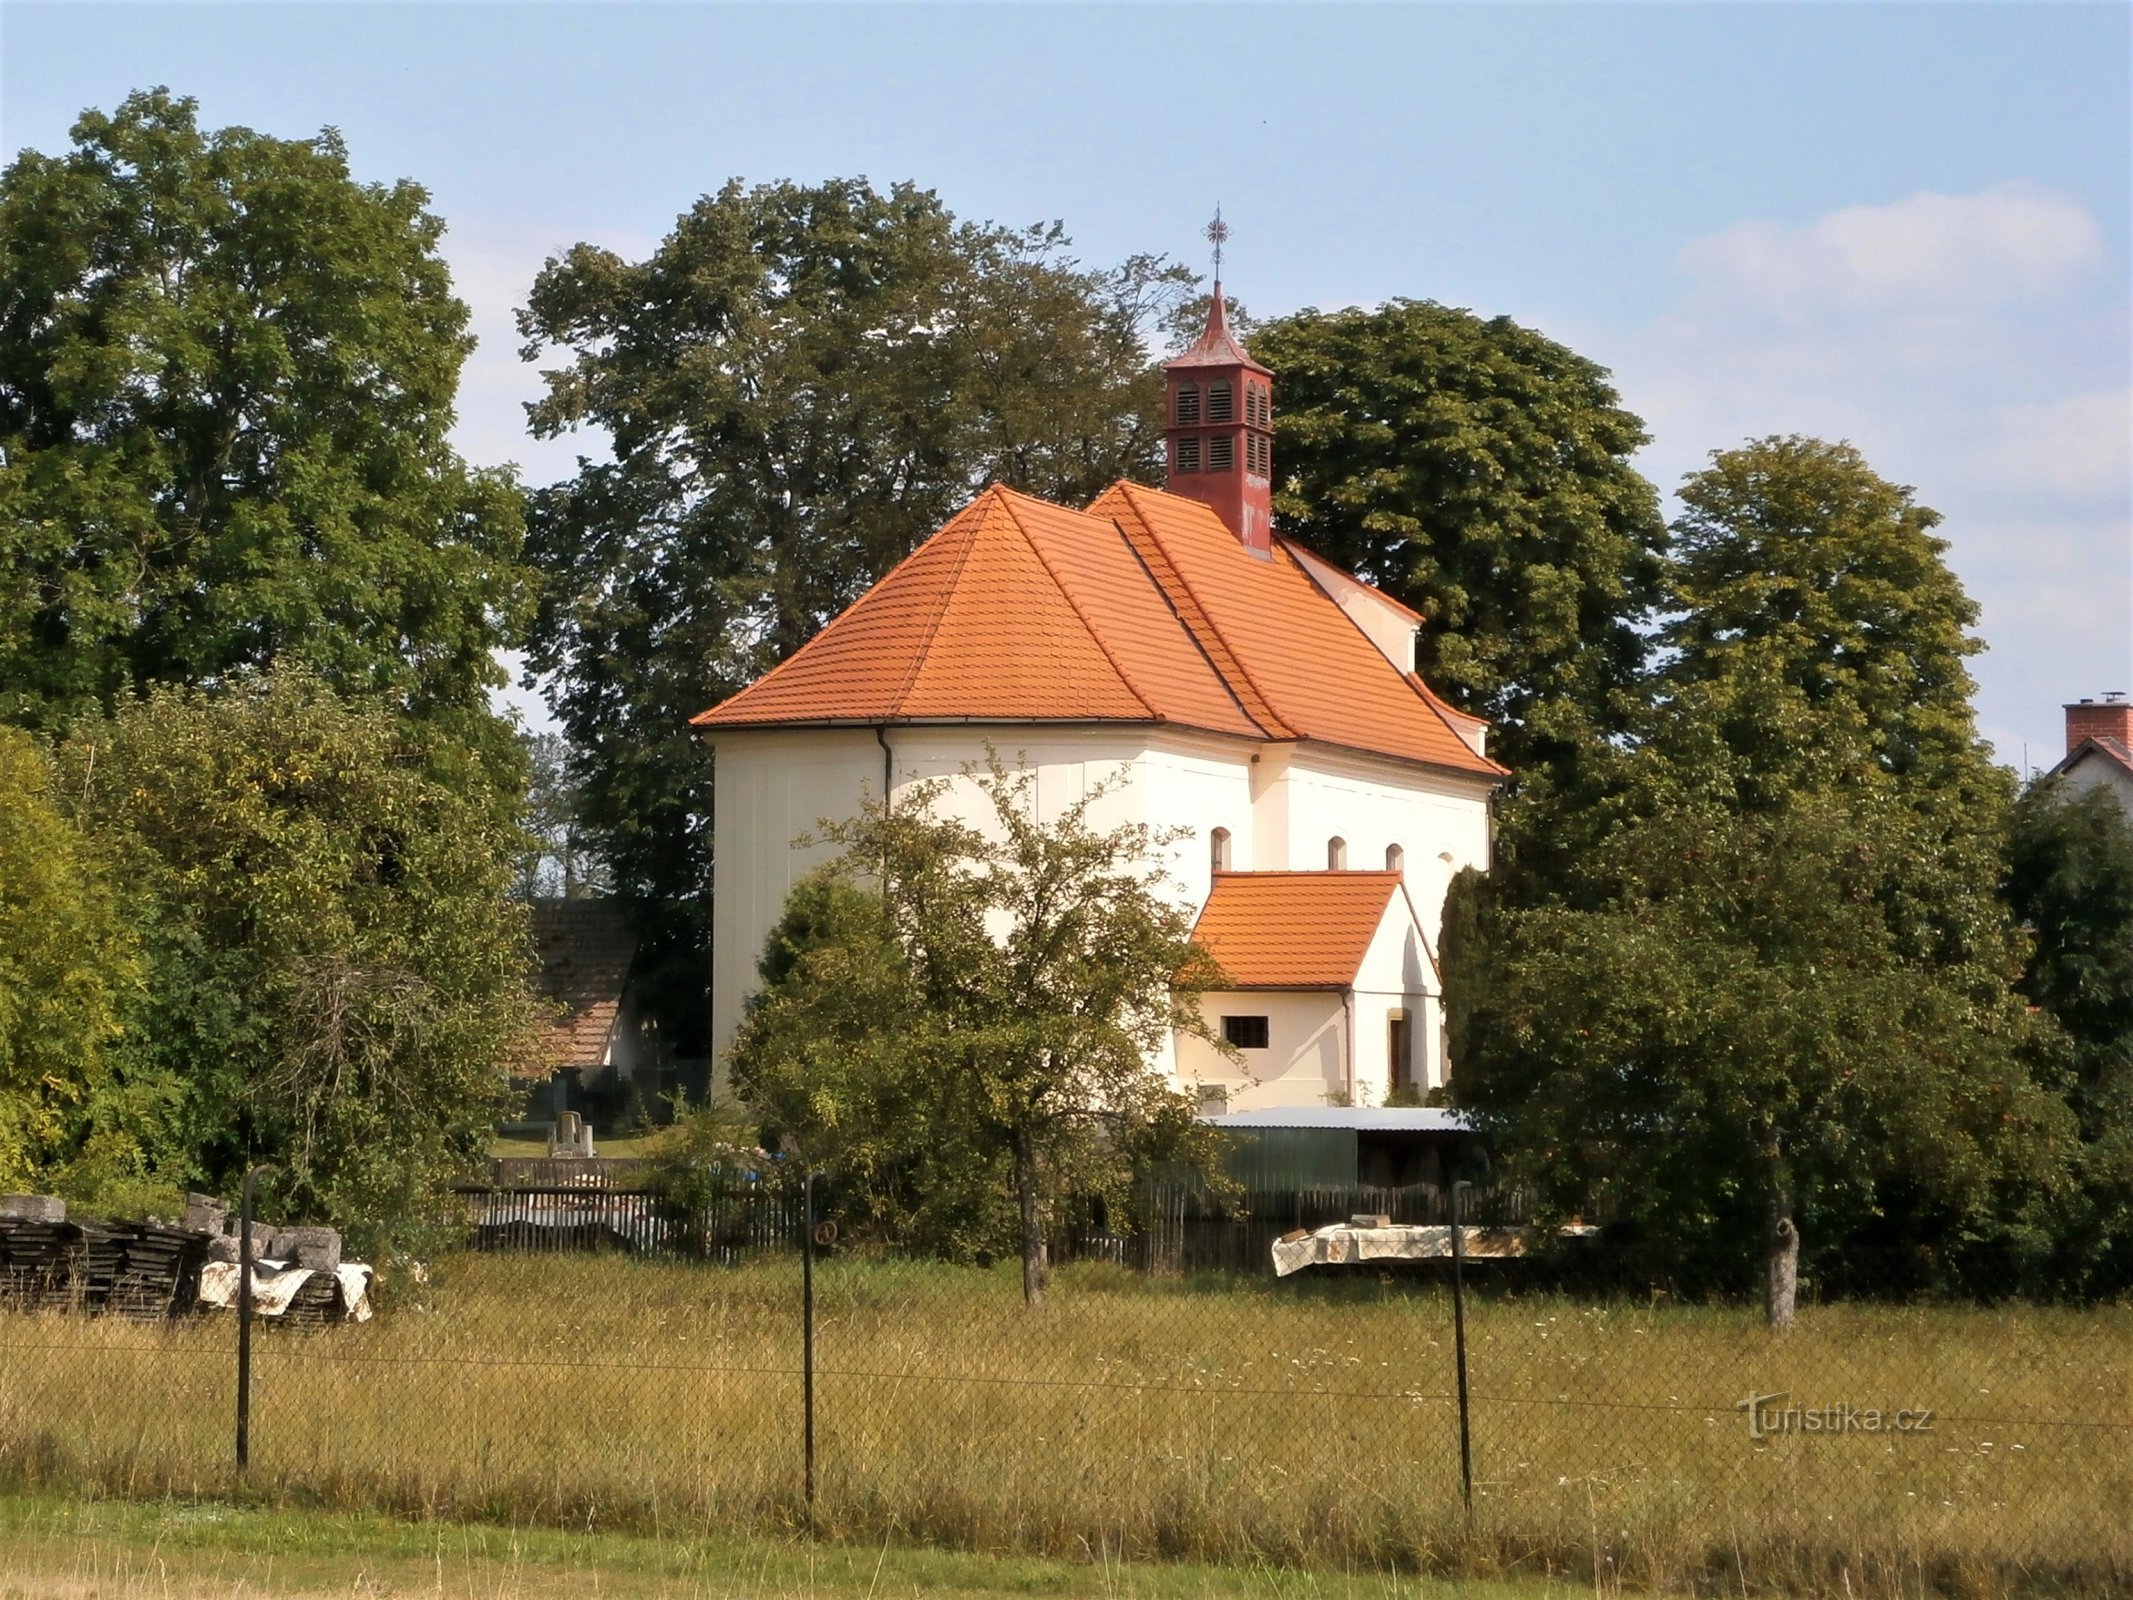 Iglesia de la Asunción de la Virgen María (Krňovice)